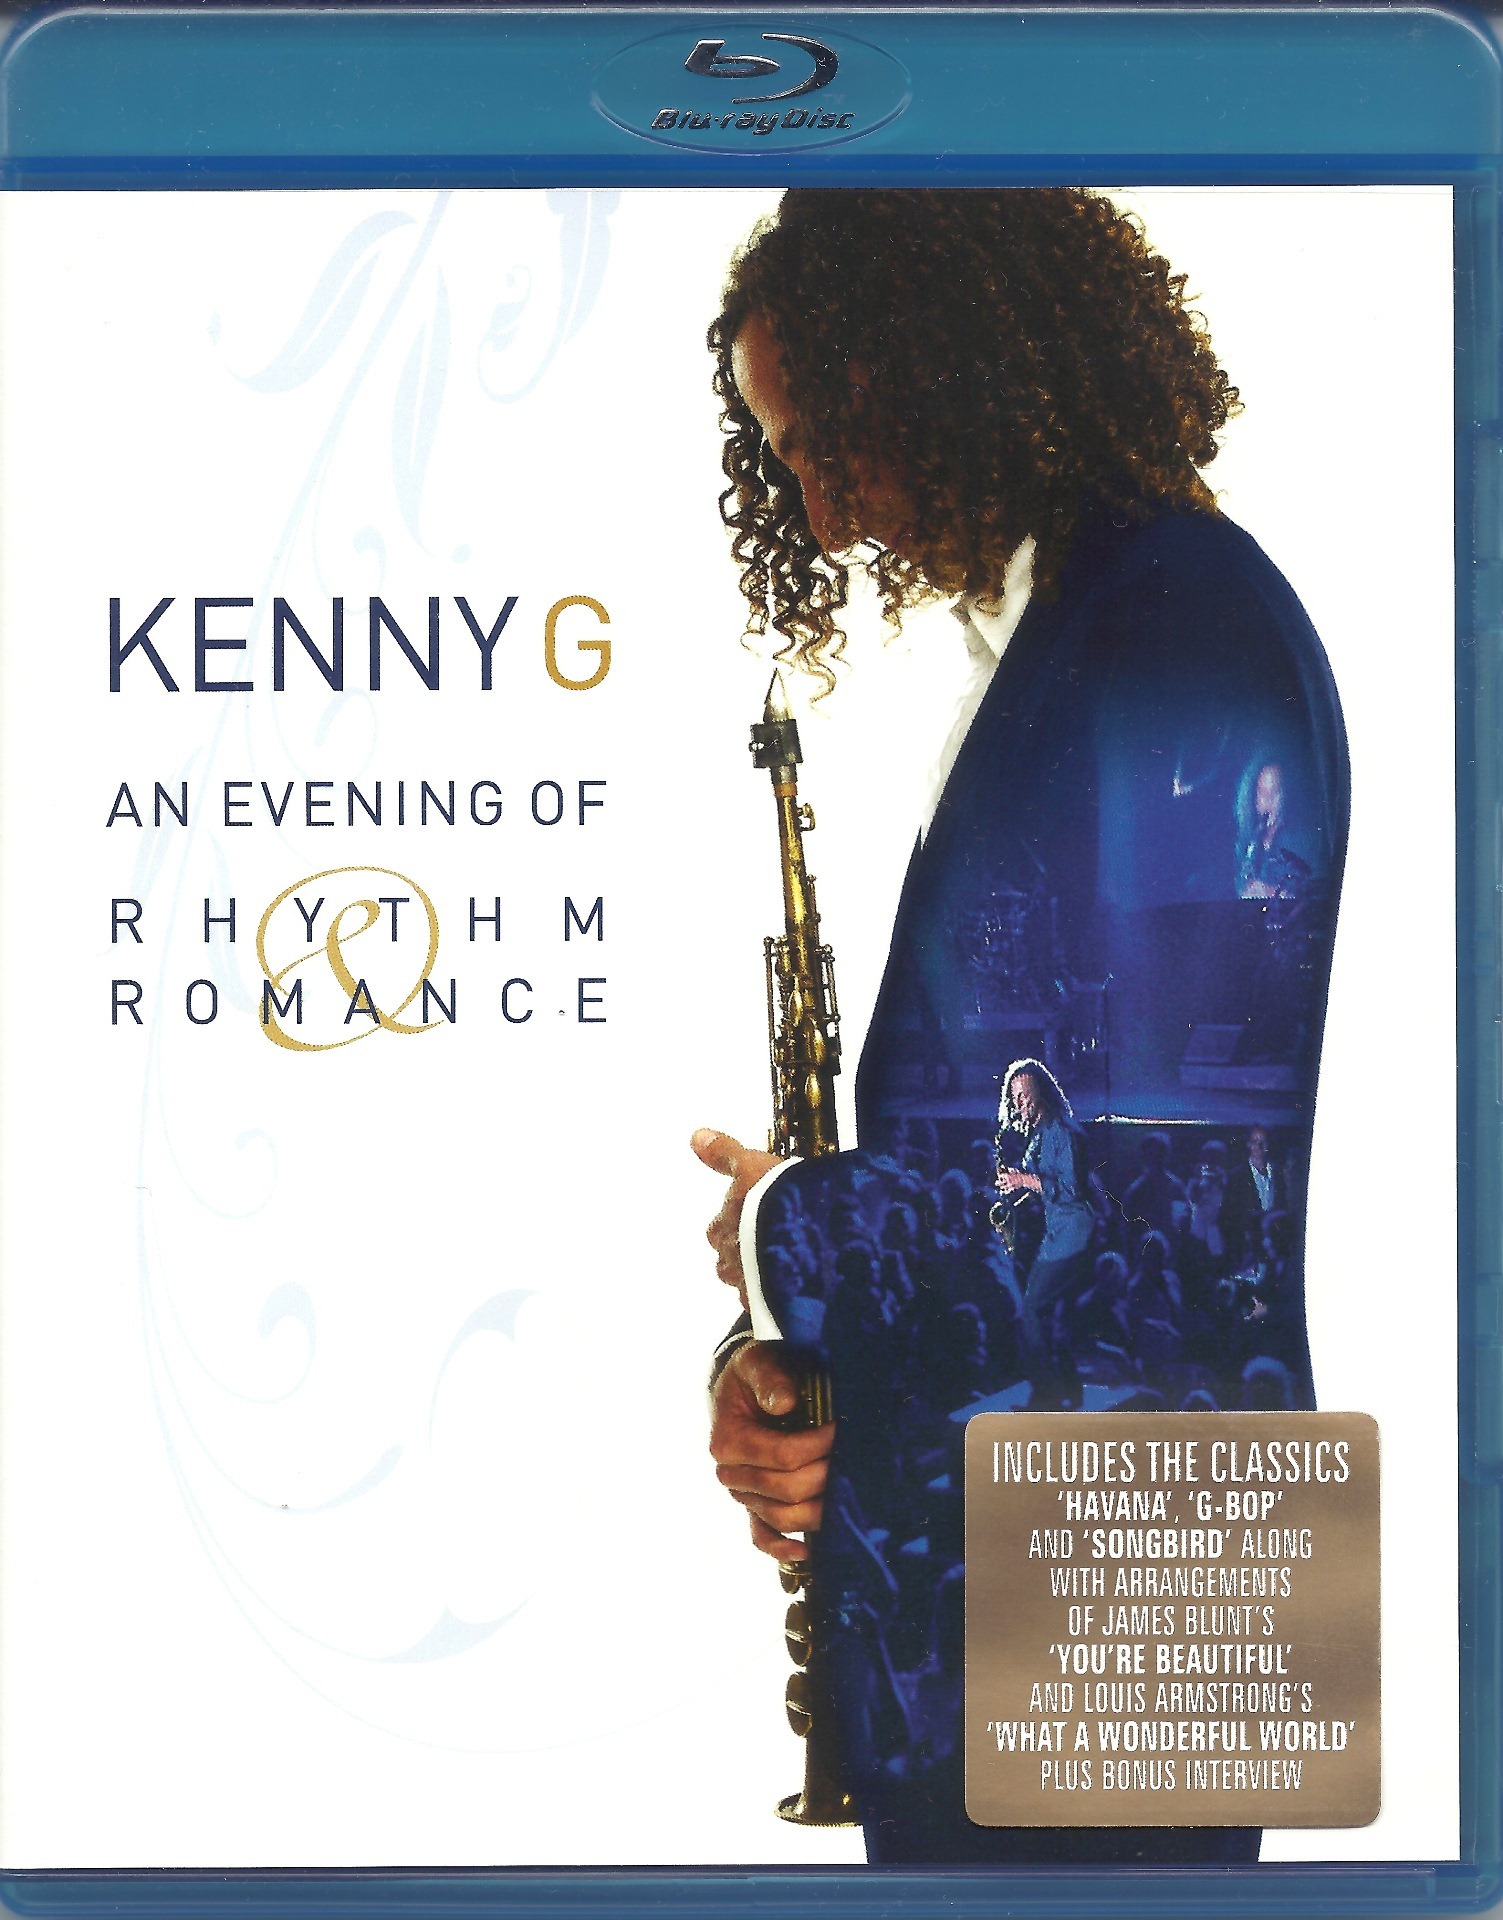 肯尼基 浪漫韻律之夜演奏會 Kenny G An Evening of Rhythm & Romance 2008 BluRay 1080p DTS-HD MA 5.1 Flac x265.10bit-BeiTai